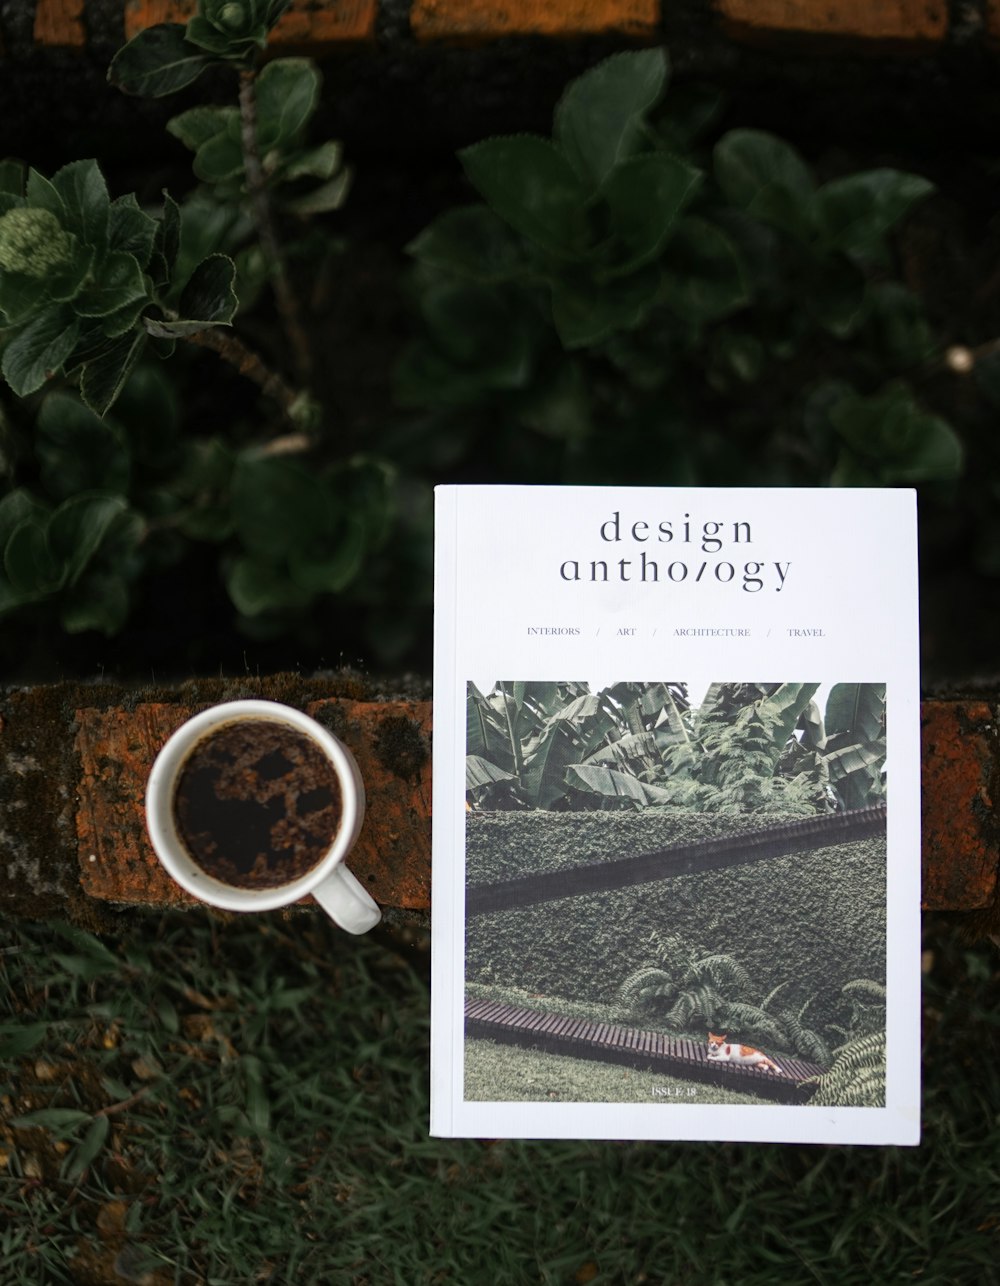 Design anthology book